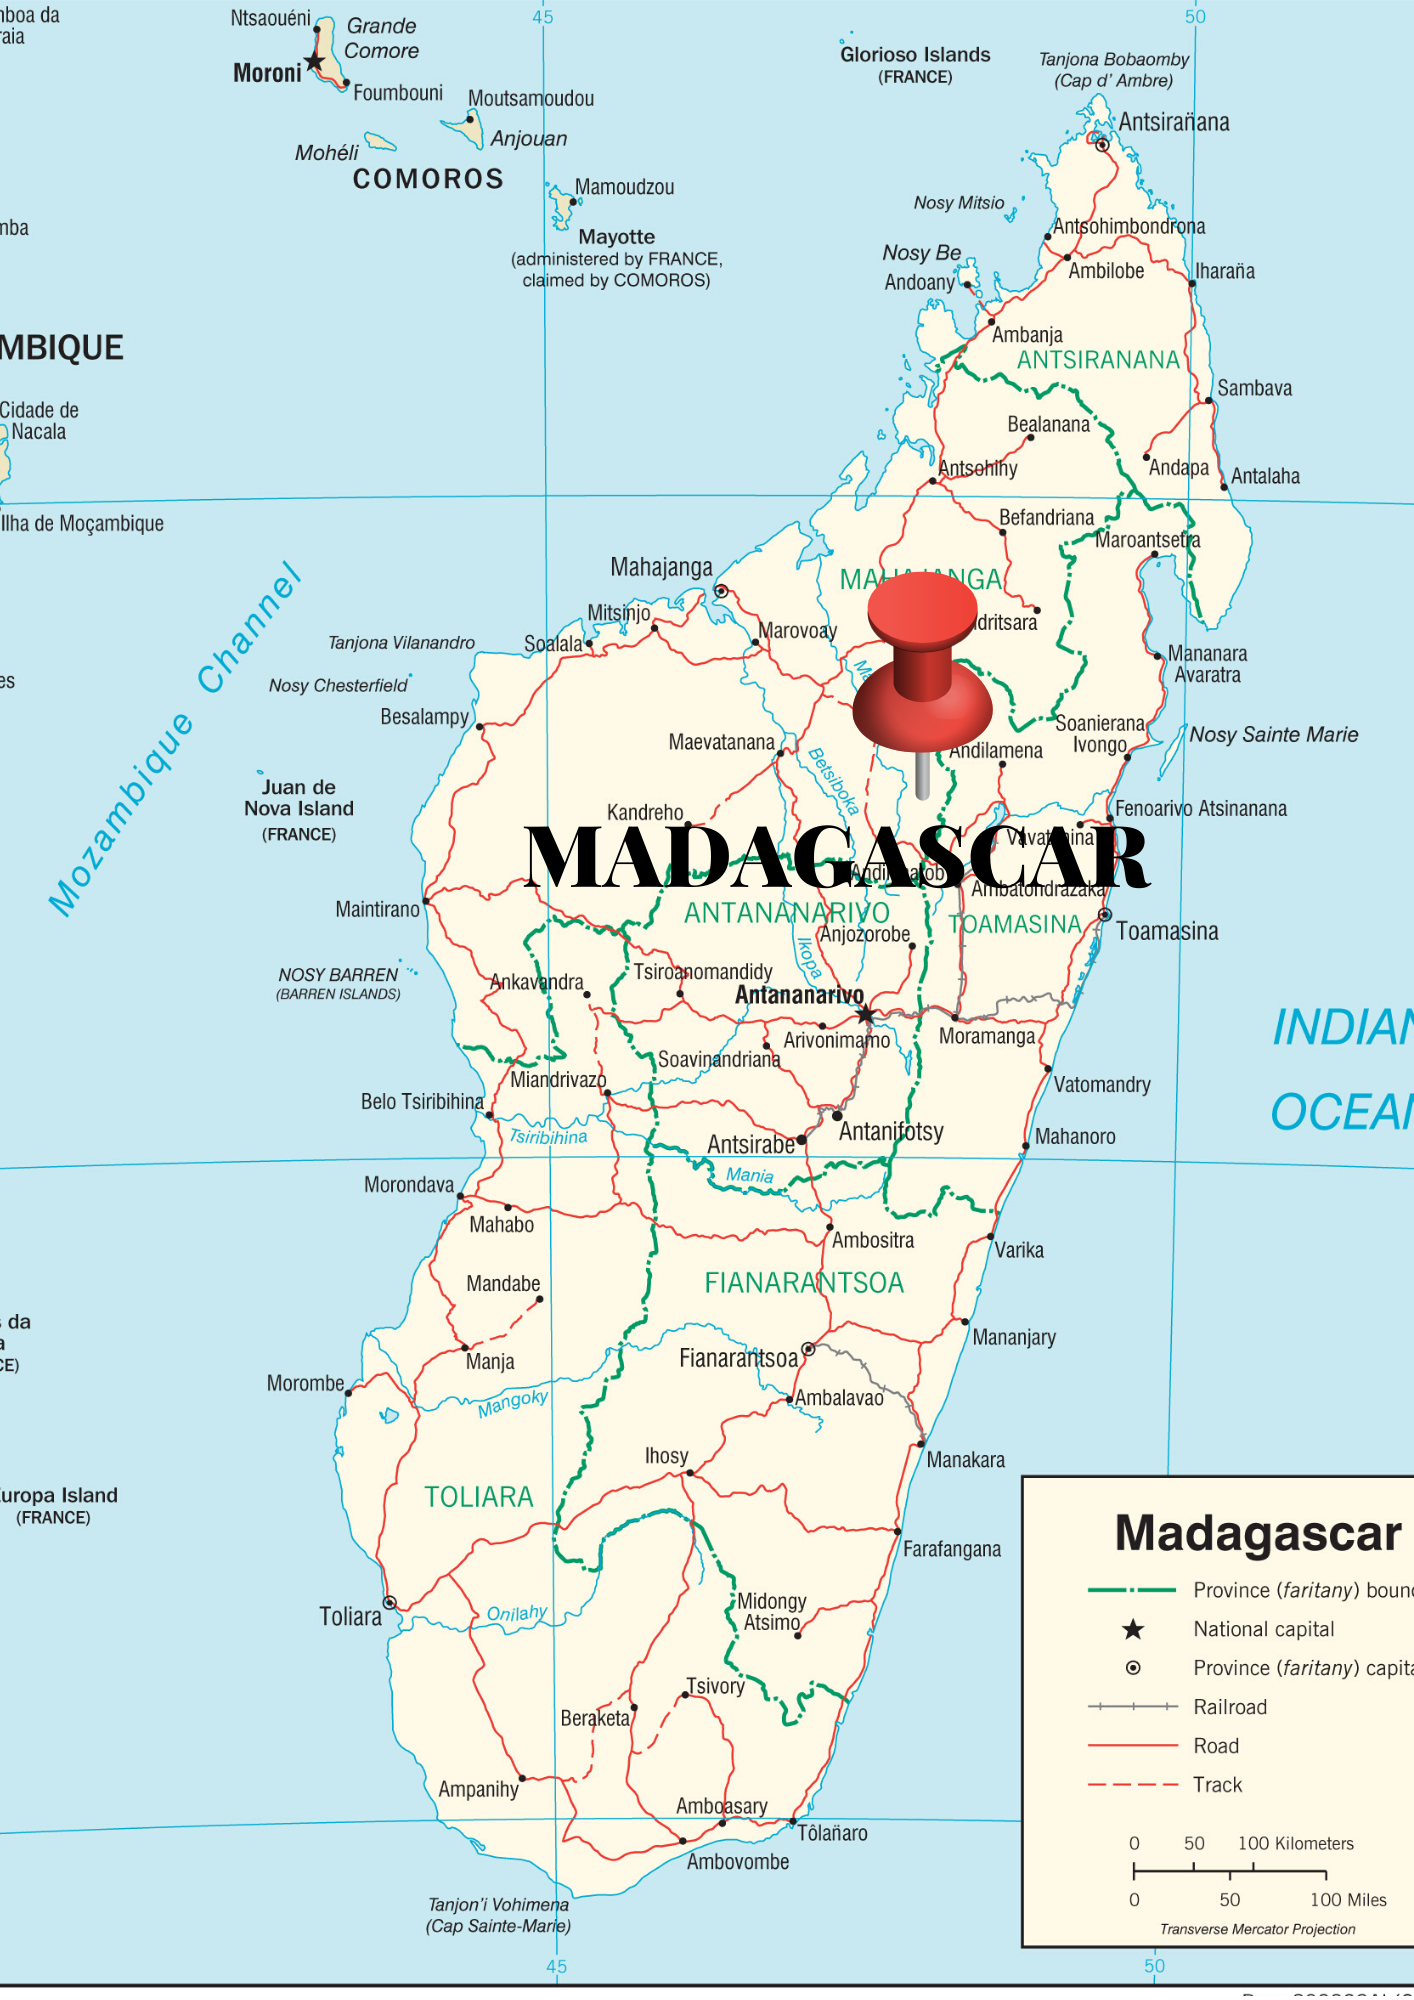 madagascar_mapa-2.png